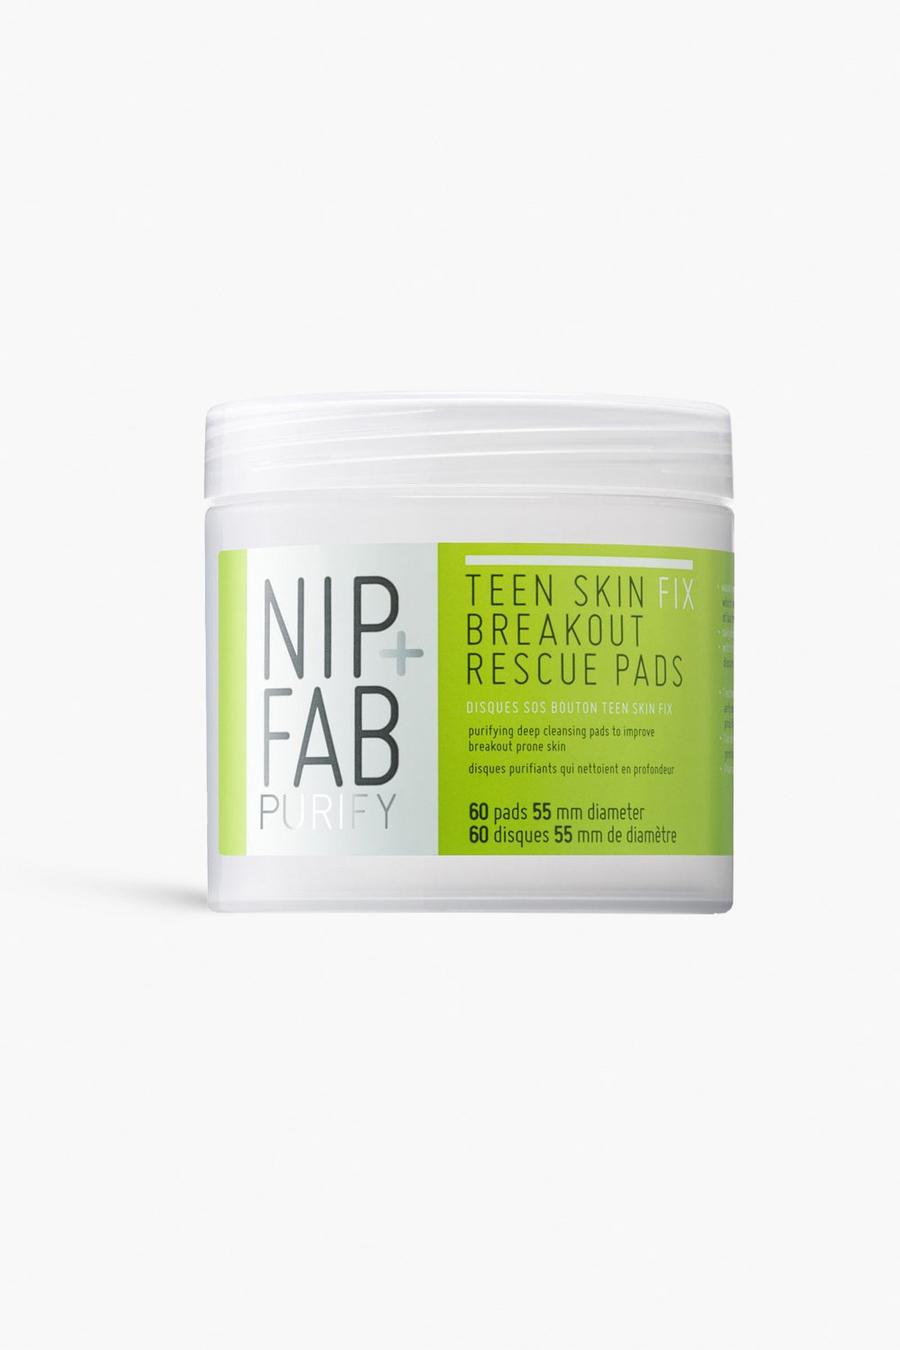 ירוק gerde Nip + Fab רטיות טיפול להתפרצויות פצעונים Teen Skin Fix